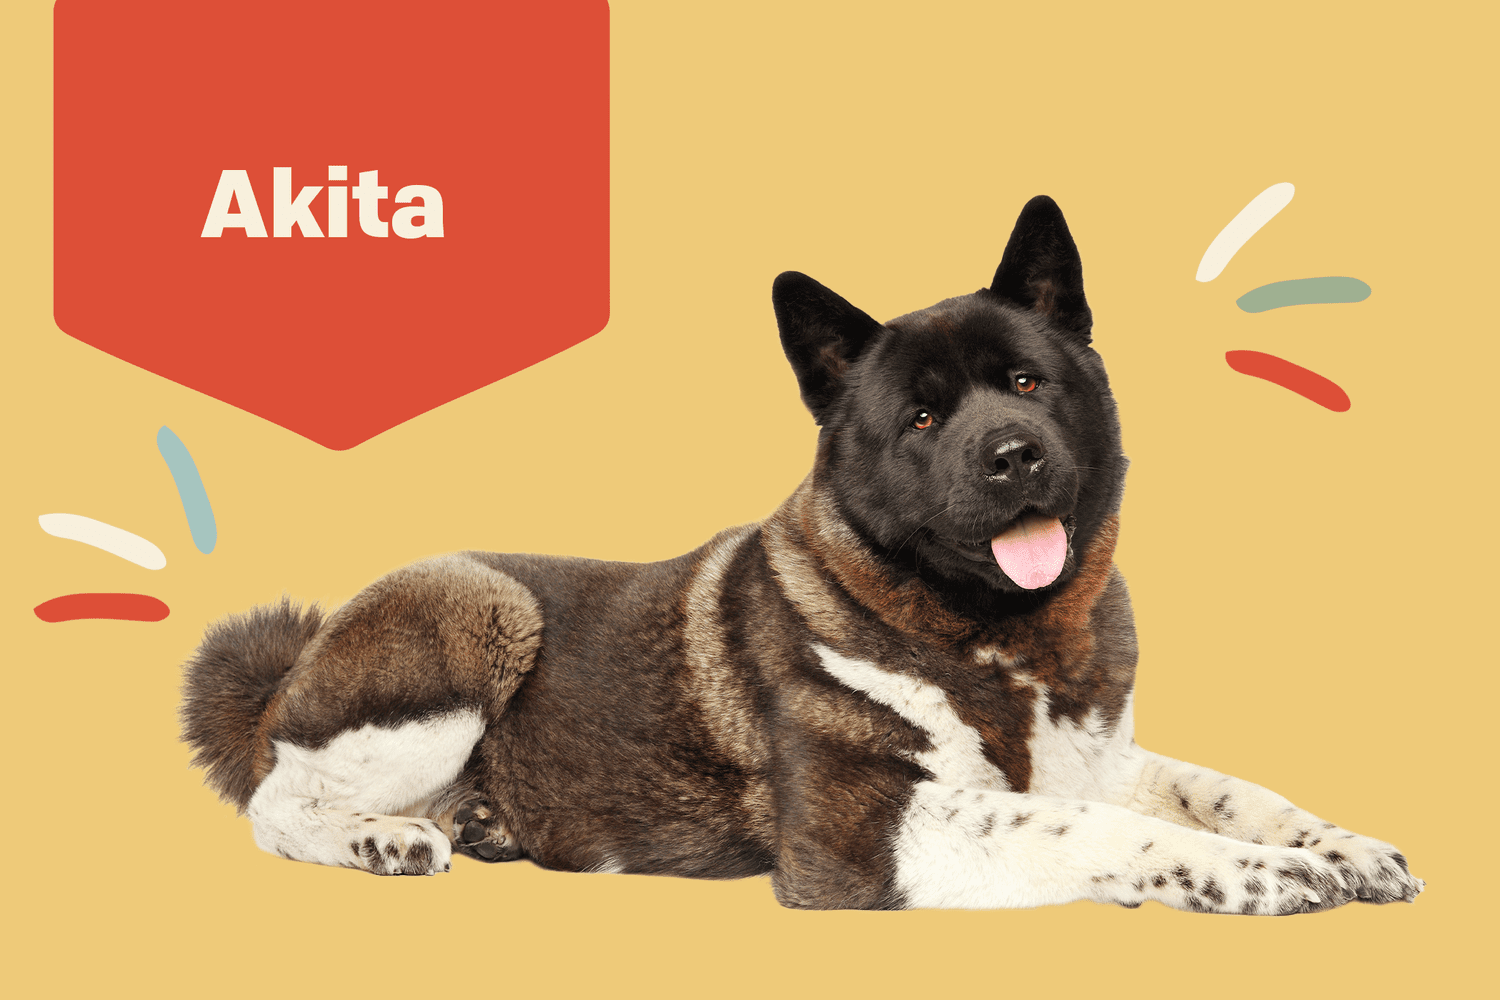 Akit dog on profile treatment background